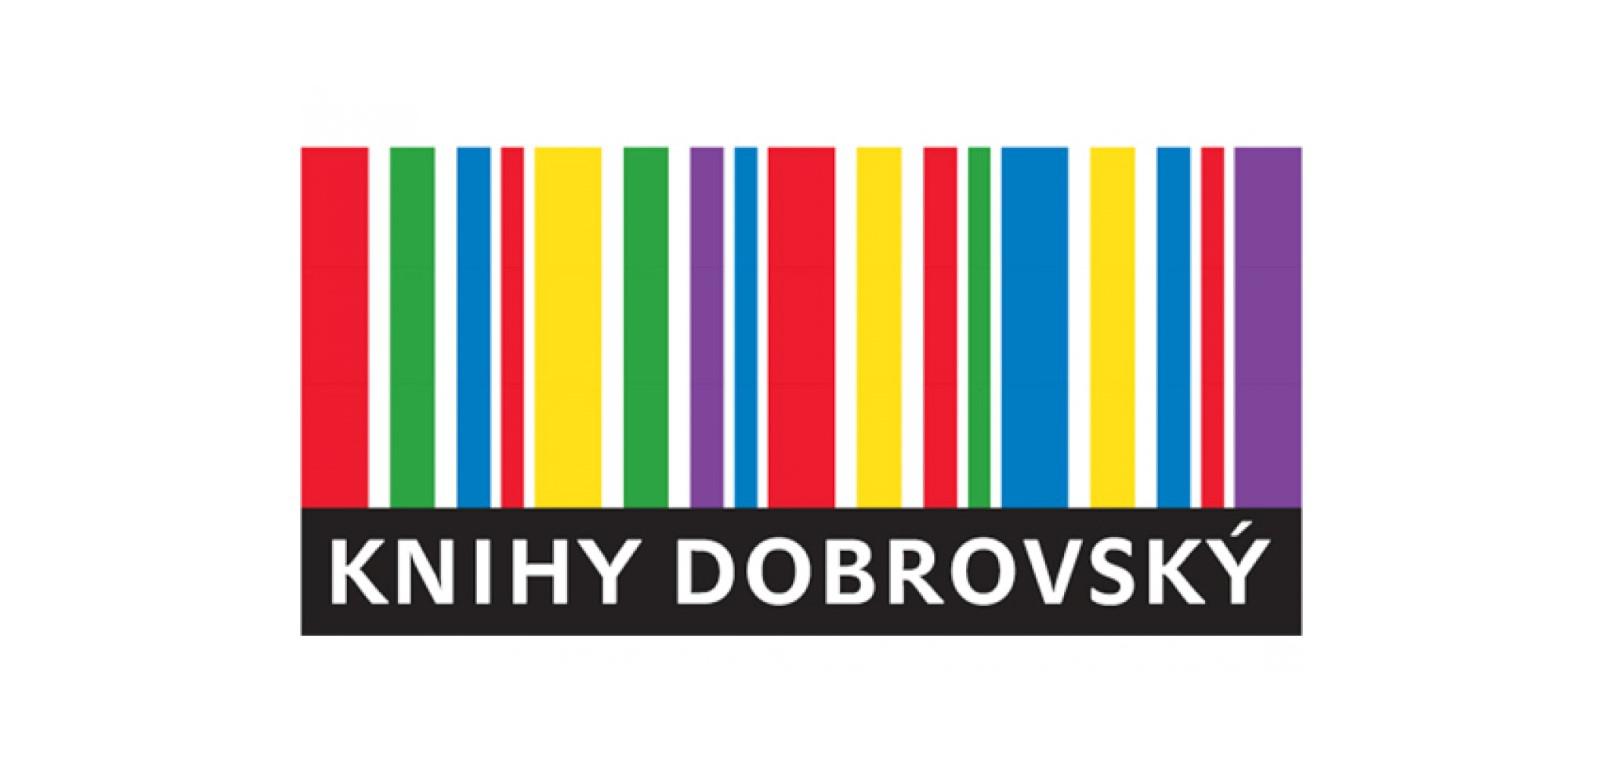 logo-dobrovsky-1600x760.jpg